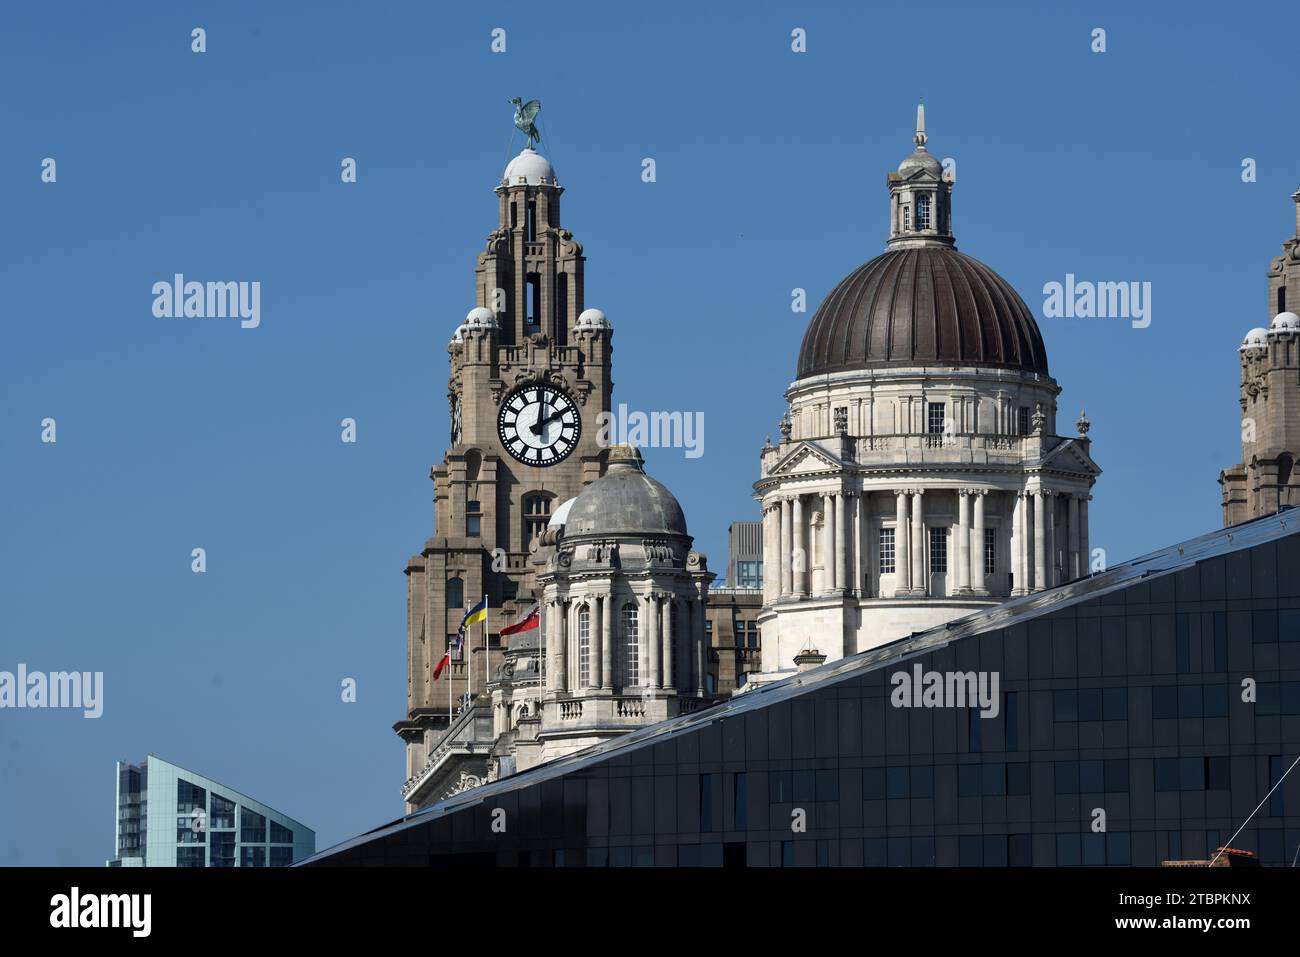 The Three Graces Liverpool, che include il Dome of the Port of Liverpool Building e la Clock Tower del Royal Liver Building (1908-11) Pier Head Liverpool Foto Stock